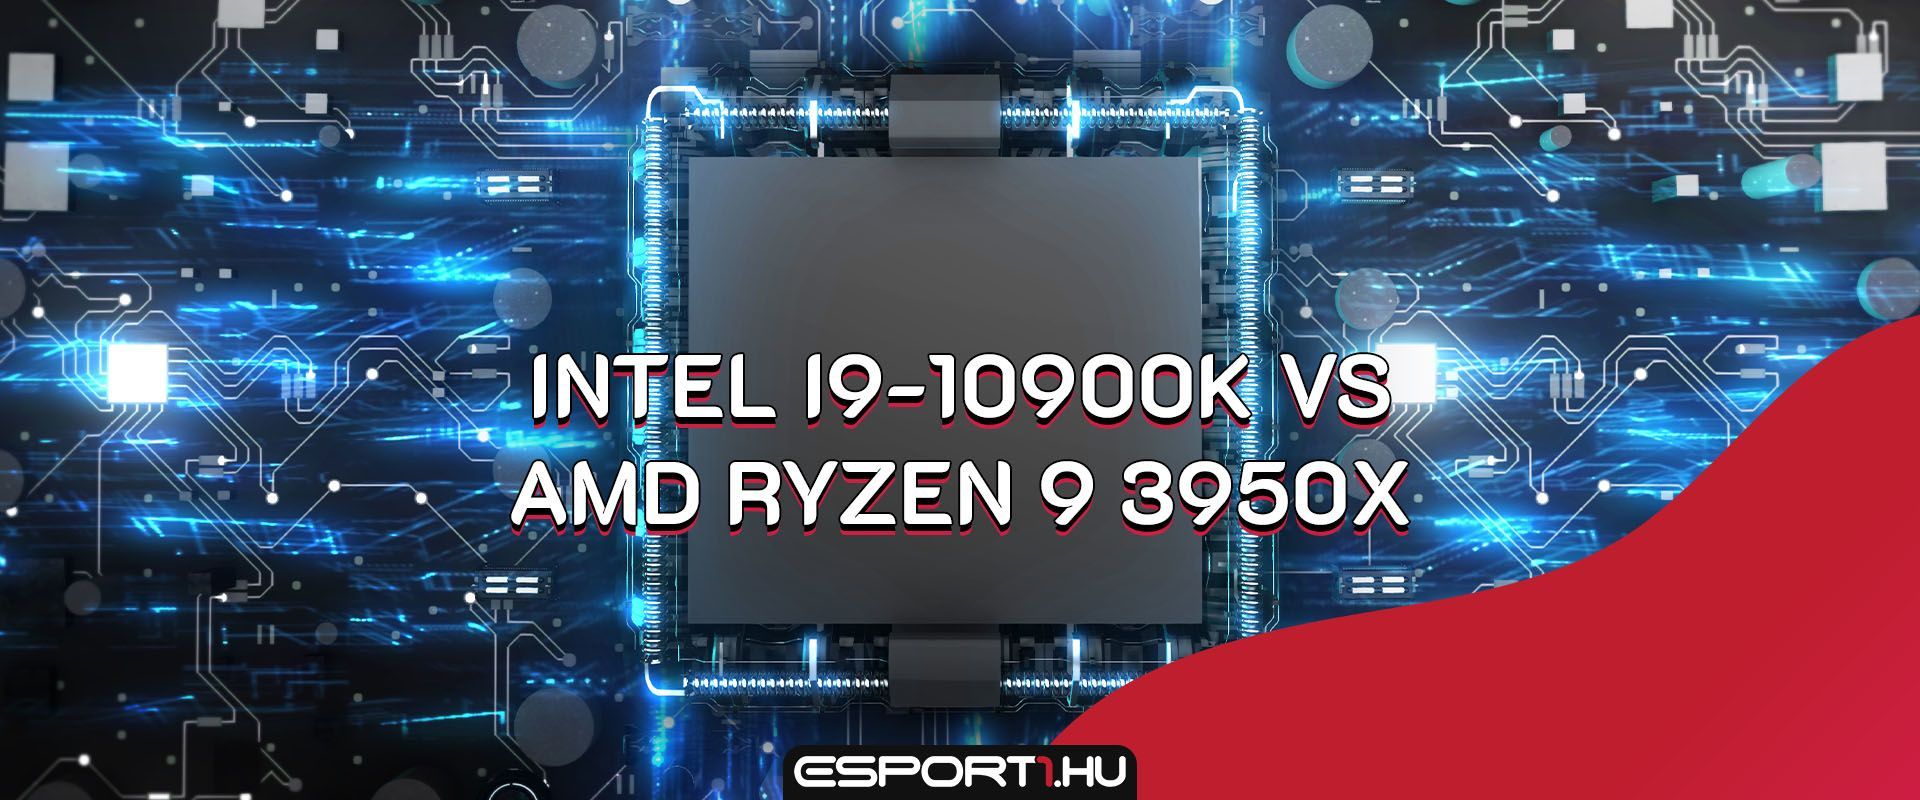 Intel zászlóshajója a Ryzen 9 csúcsprocesszora ellen: Intel i9-10900K vs Ryzen 9 3950X